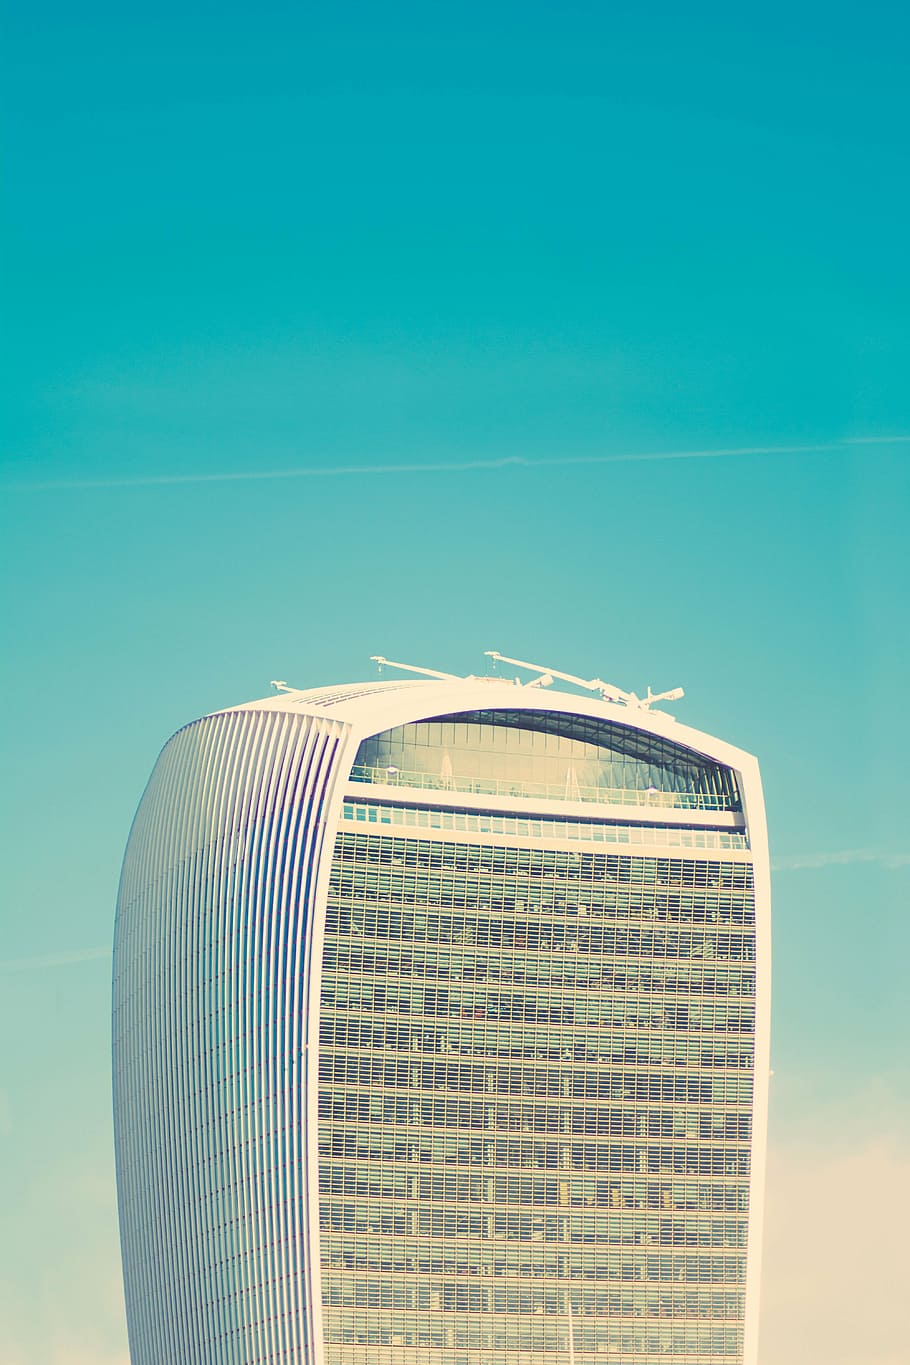 高層, 建物, 飛行機雲, 白, 建築, インフラストラクチャ, 青, 空, 超高層ビル, 塔